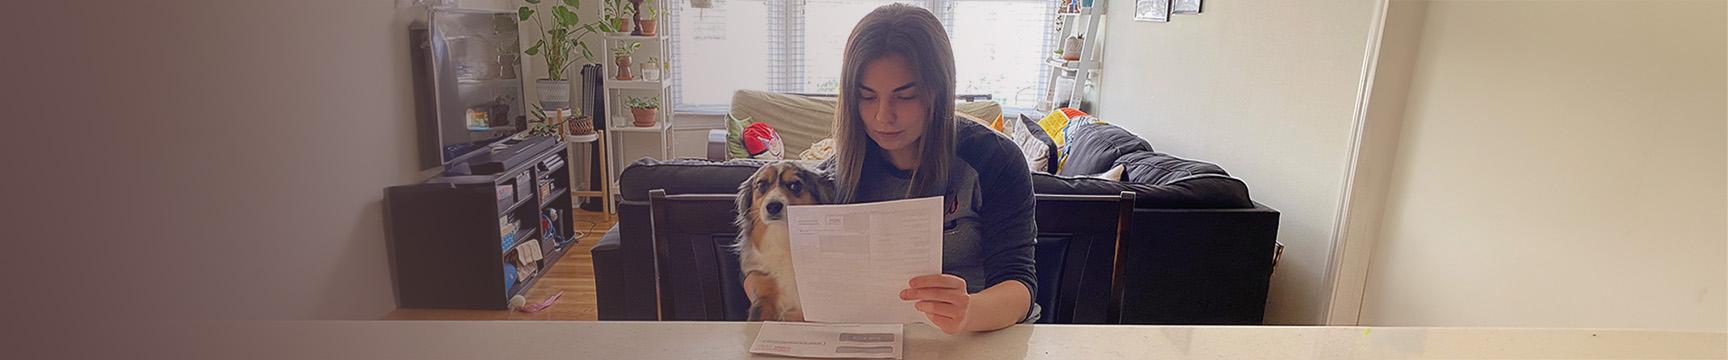 Mujeres con un perro leyendo su factura.